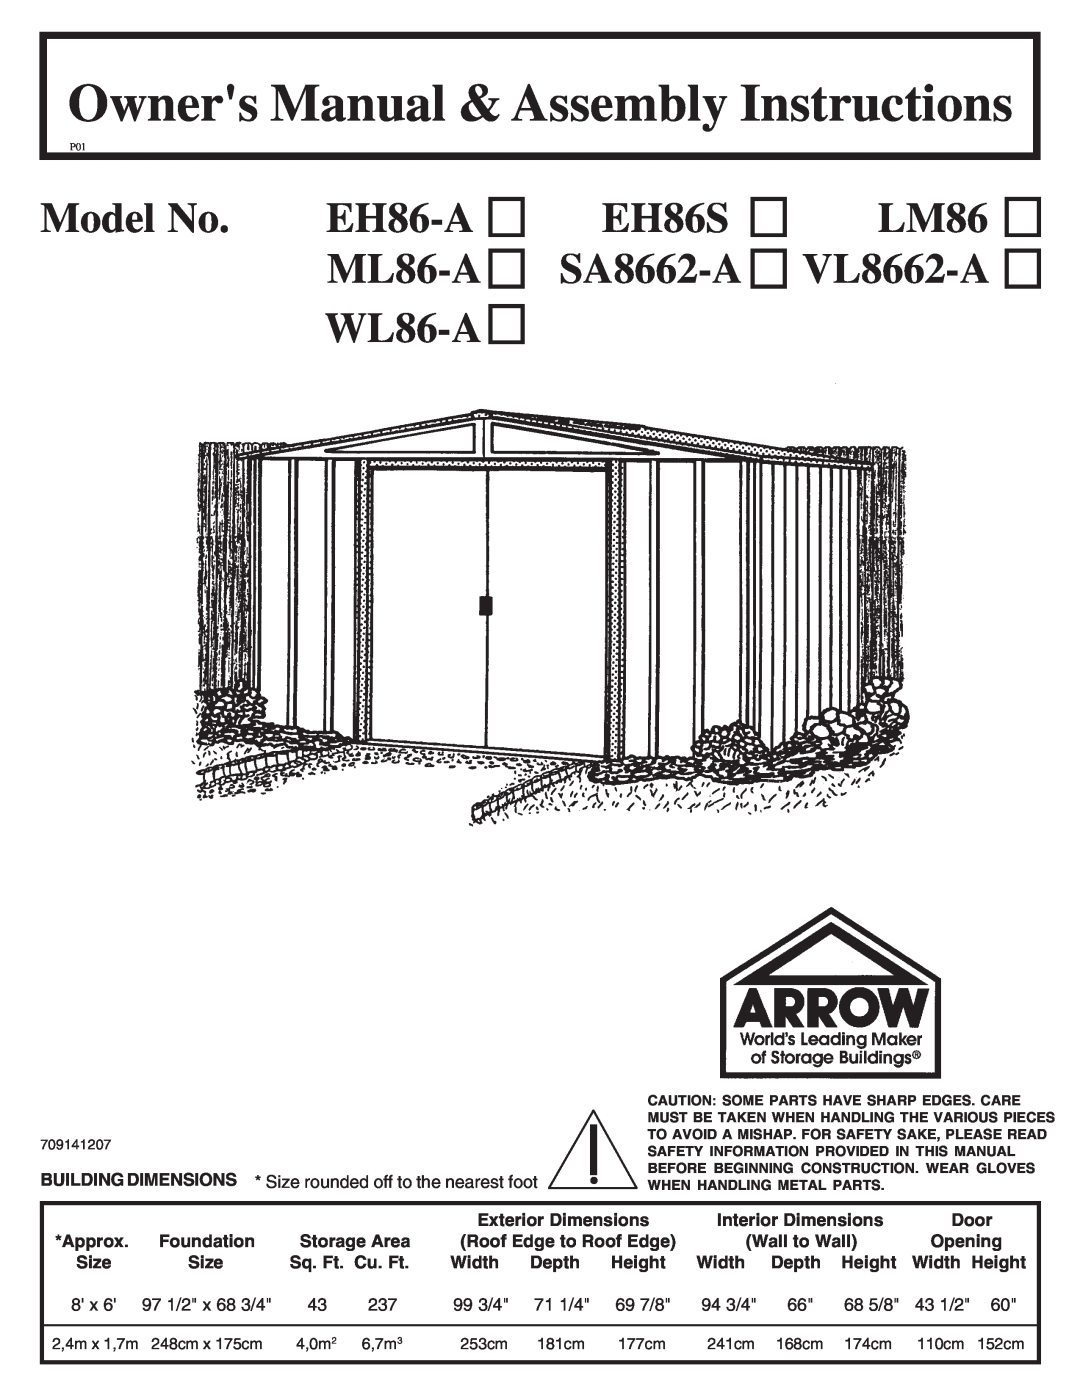 Arrow Plastic owner manual Model No. EH86-A ML86-A WL86-A, EH86S SA8662-A, LM86 VL8662-A 